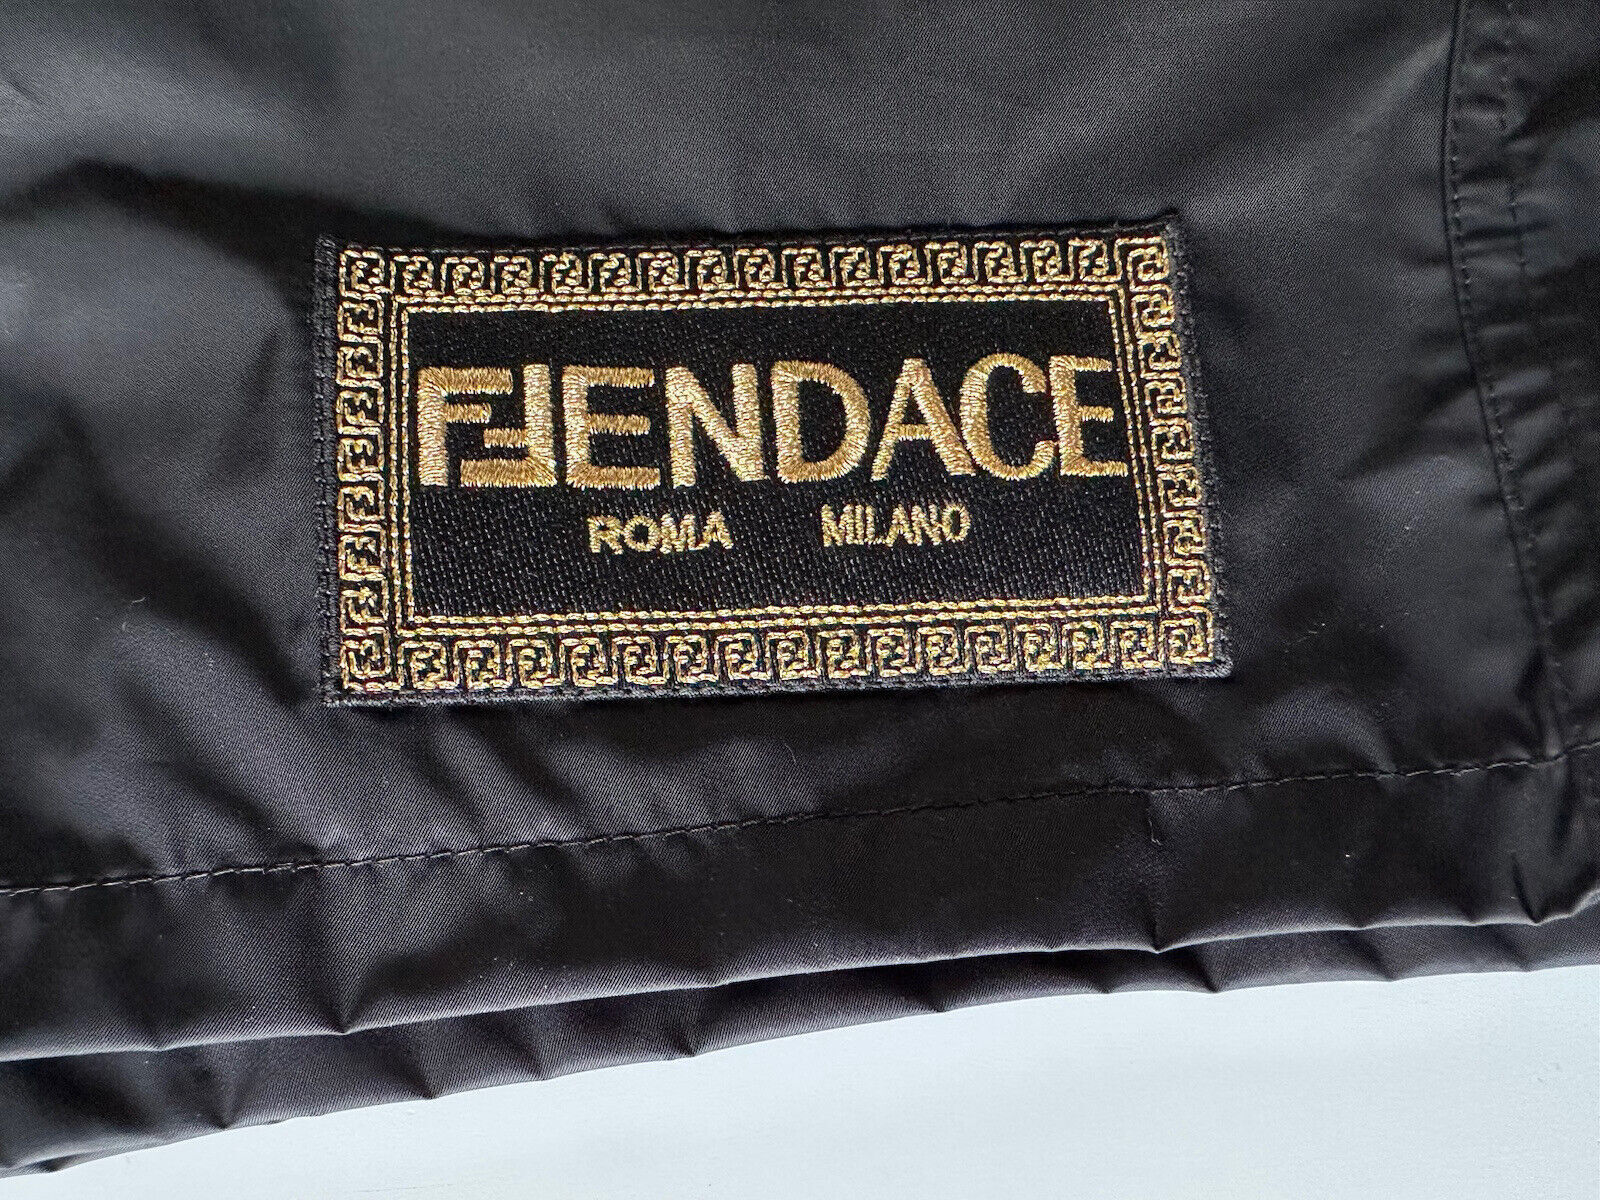 Мужские черные боксеры для плавания Versace Fendace стоимостью 575 долларов США 50 (4 США) IT 1006614 